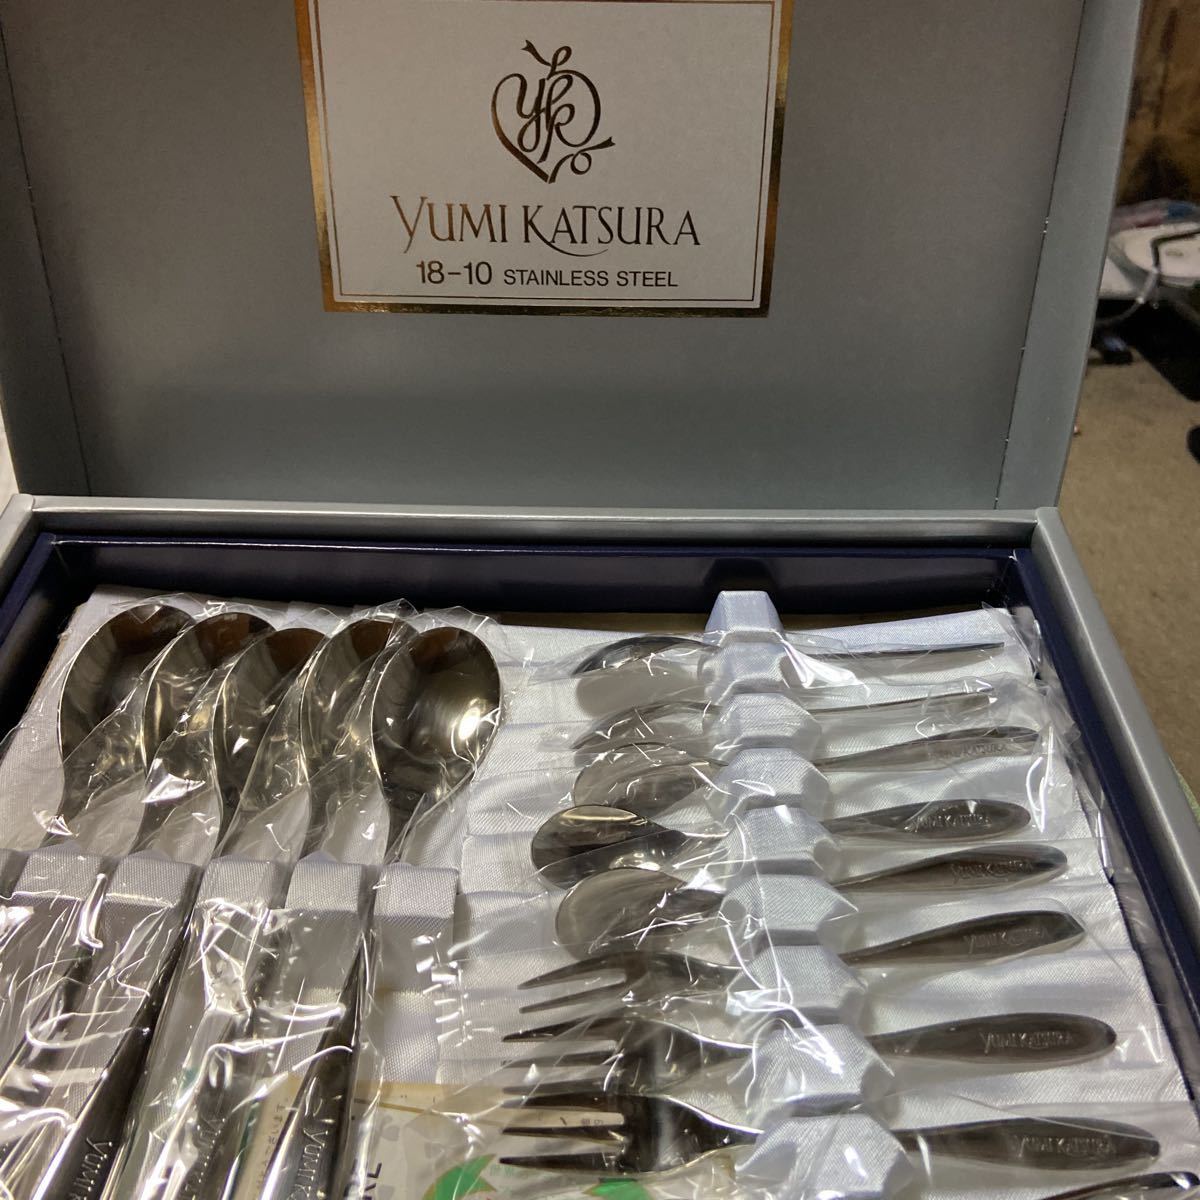  price cut *yumikatsupa stainlesssteel spoon Fork set 